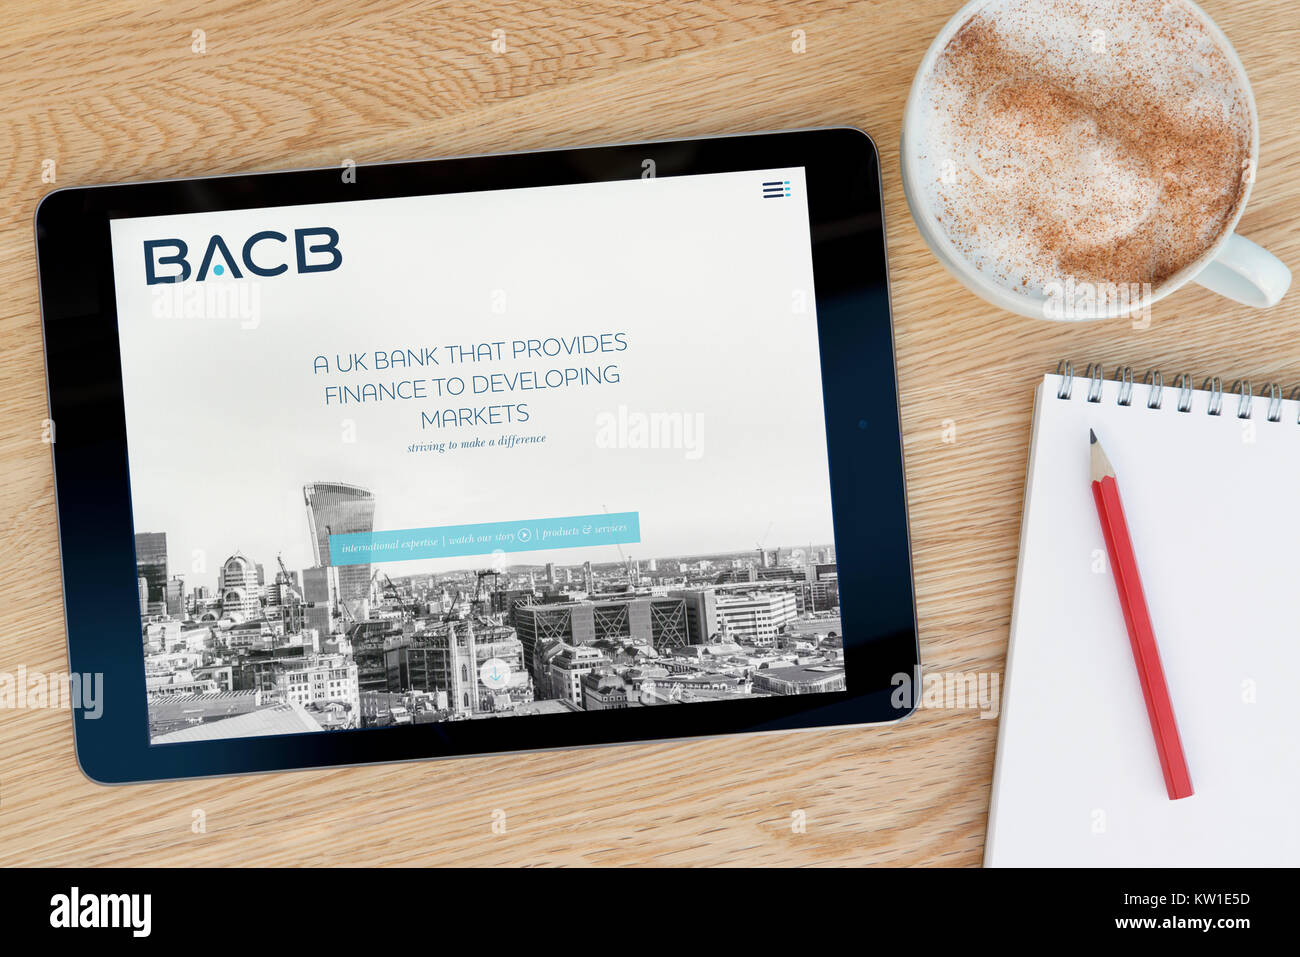 Der bacb (British Arab Commercial Bank) Website auf einem iPad, ruht auf einem hölzernen Tisch neben einem Notizblock, Bleistift und Tasse Kaffee (nur redaktionelle Nutzung). Stockfoto